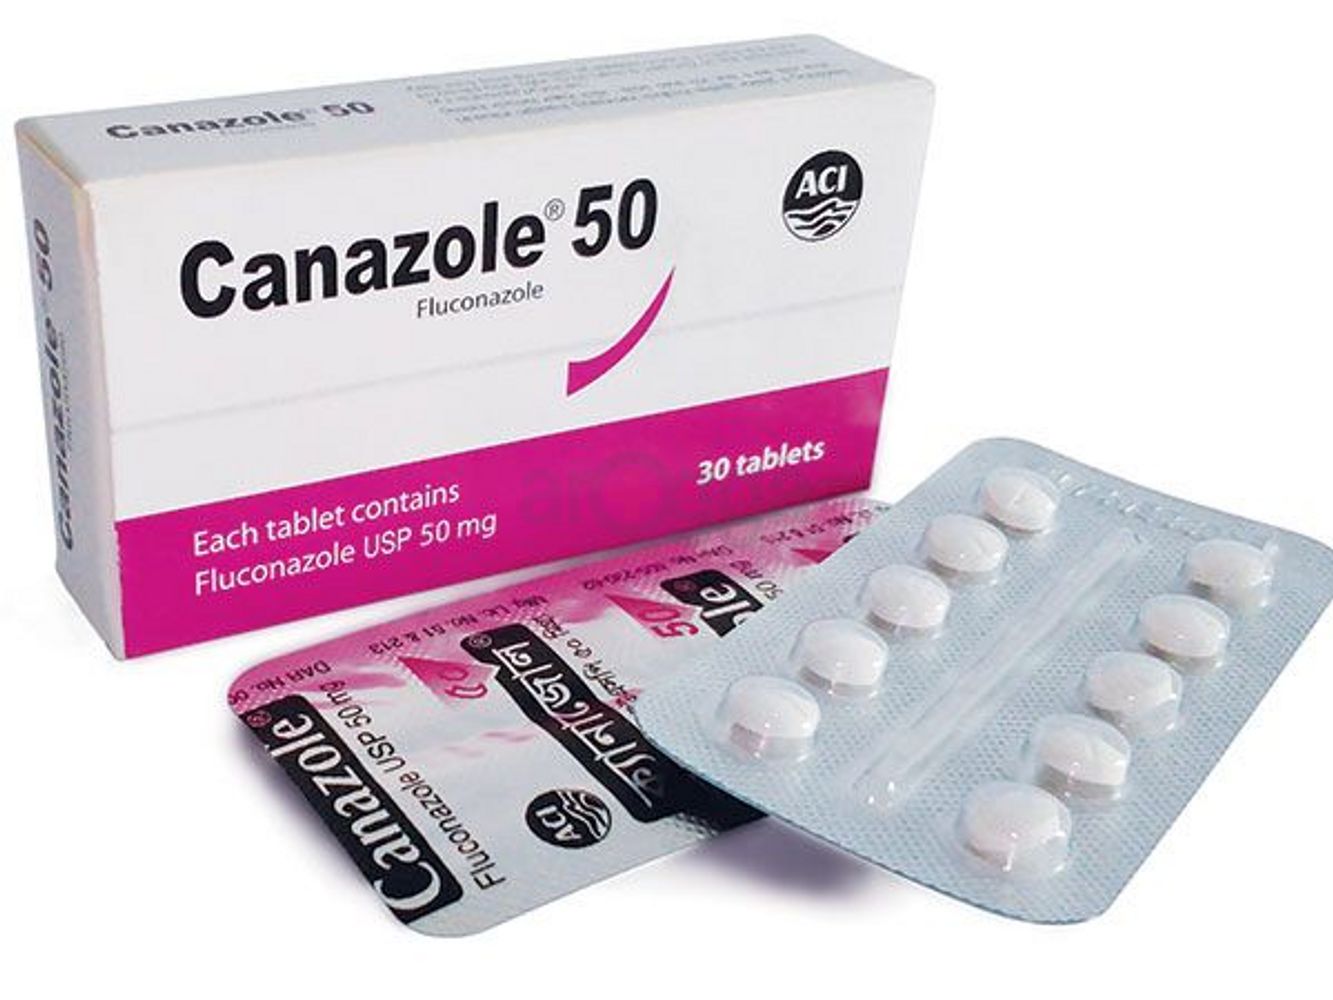 Canazole 50